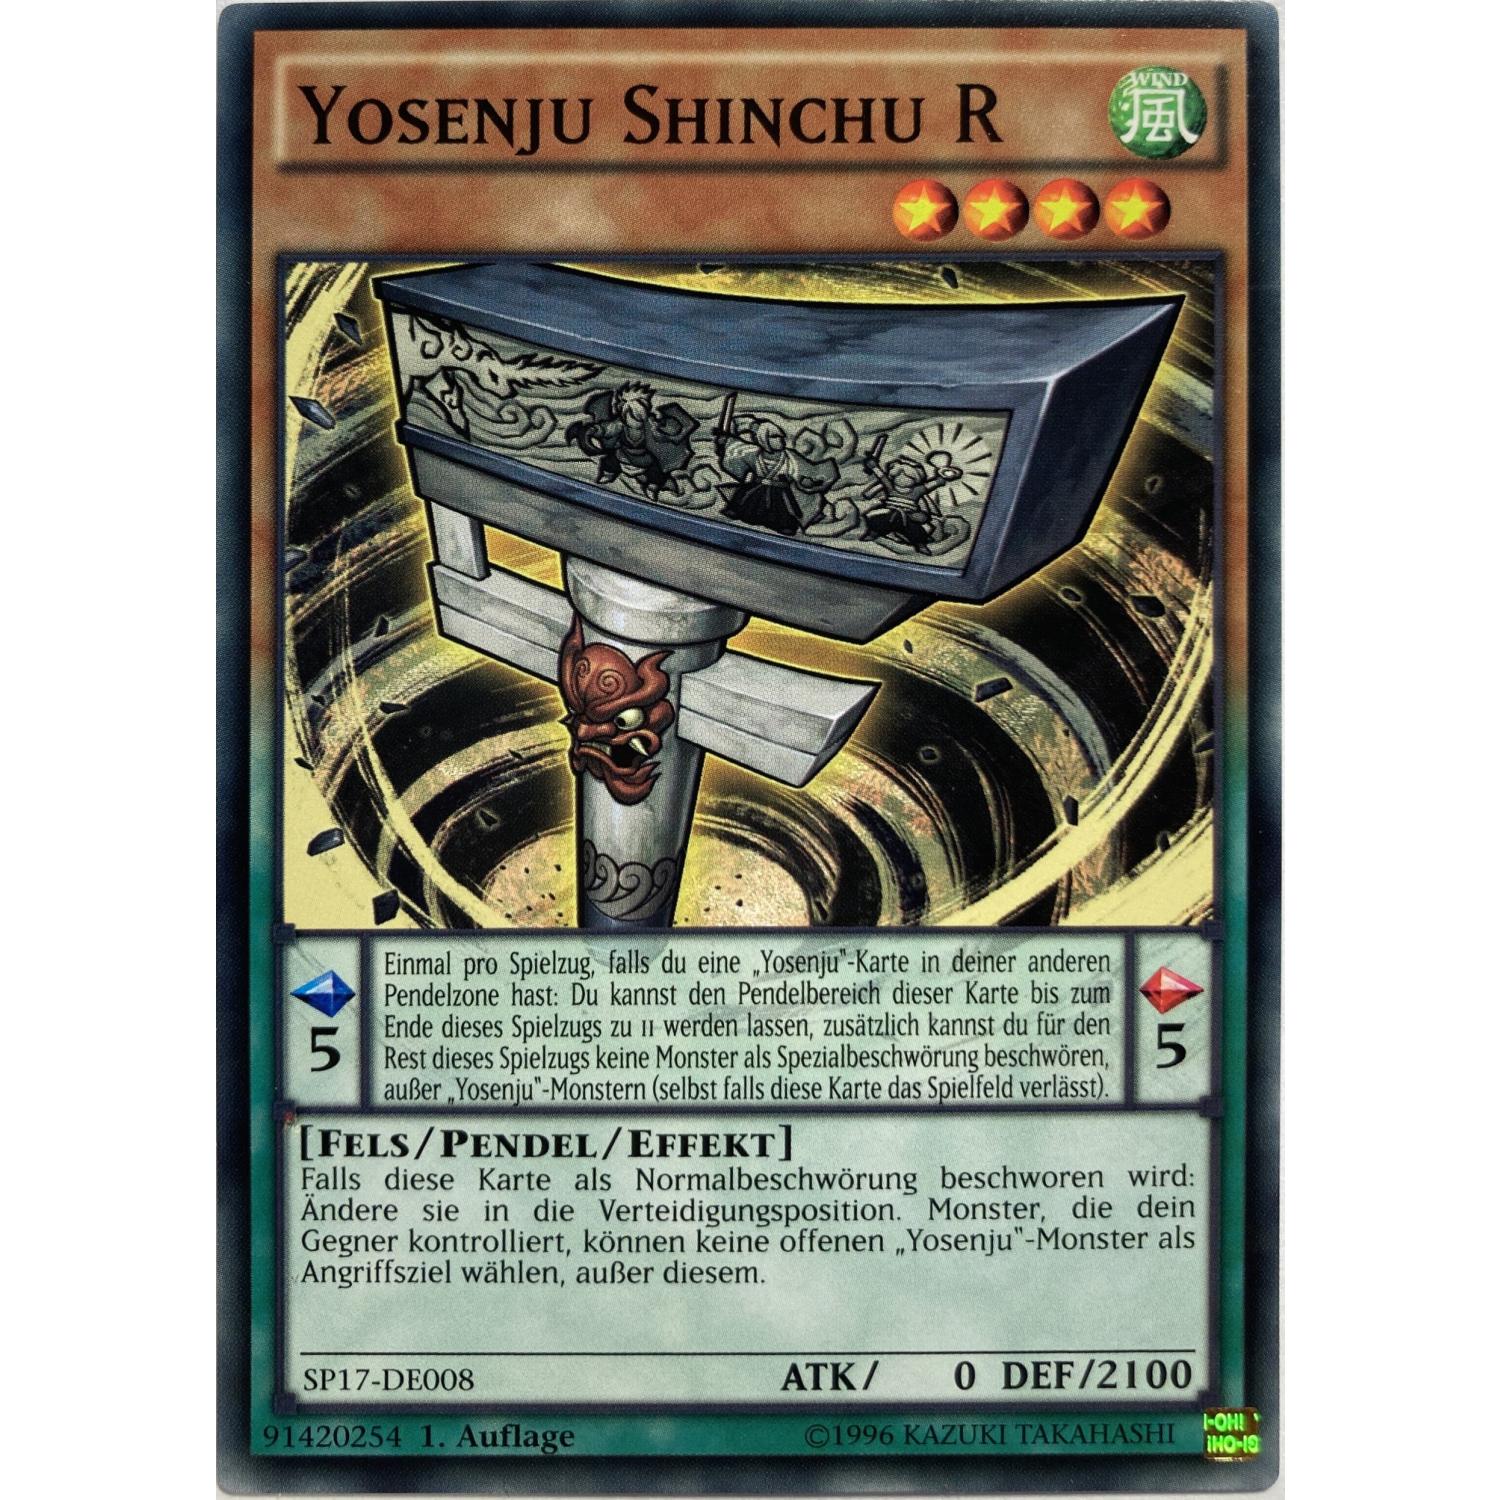 Yosenju Shinchu R 1. Auflage SP17-DE008 Common